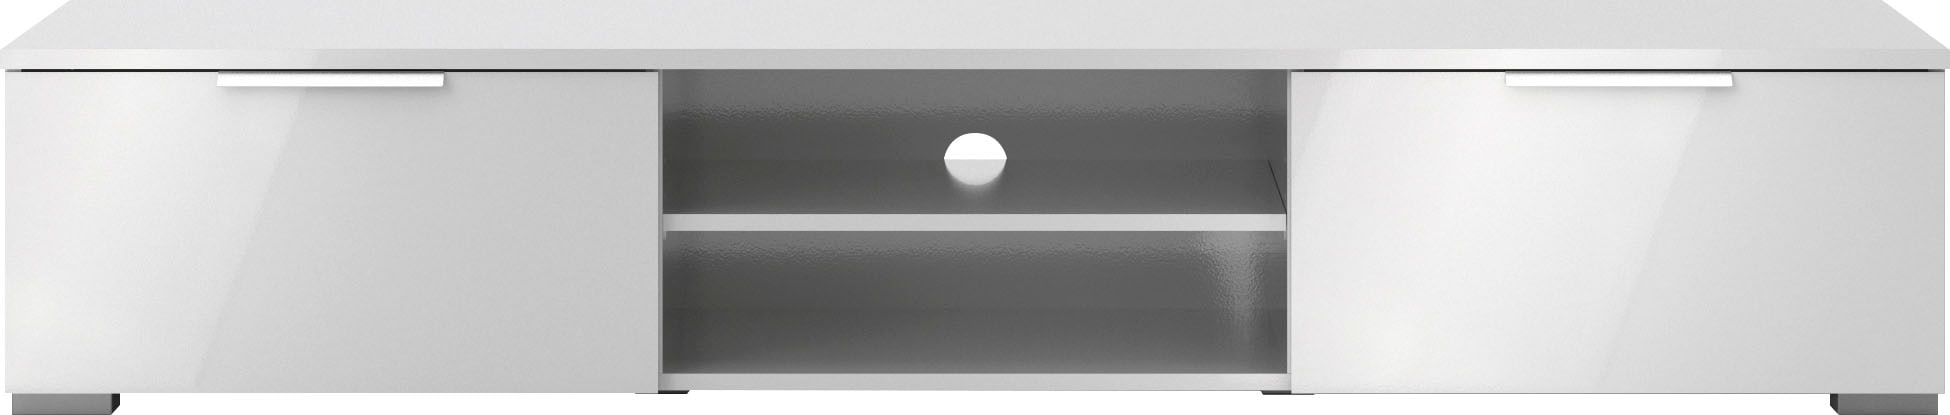 Home affaire TV-Board »Match«, pflegeleichte Oberfläche, in Farbvarianten, Breite 172,7 cm